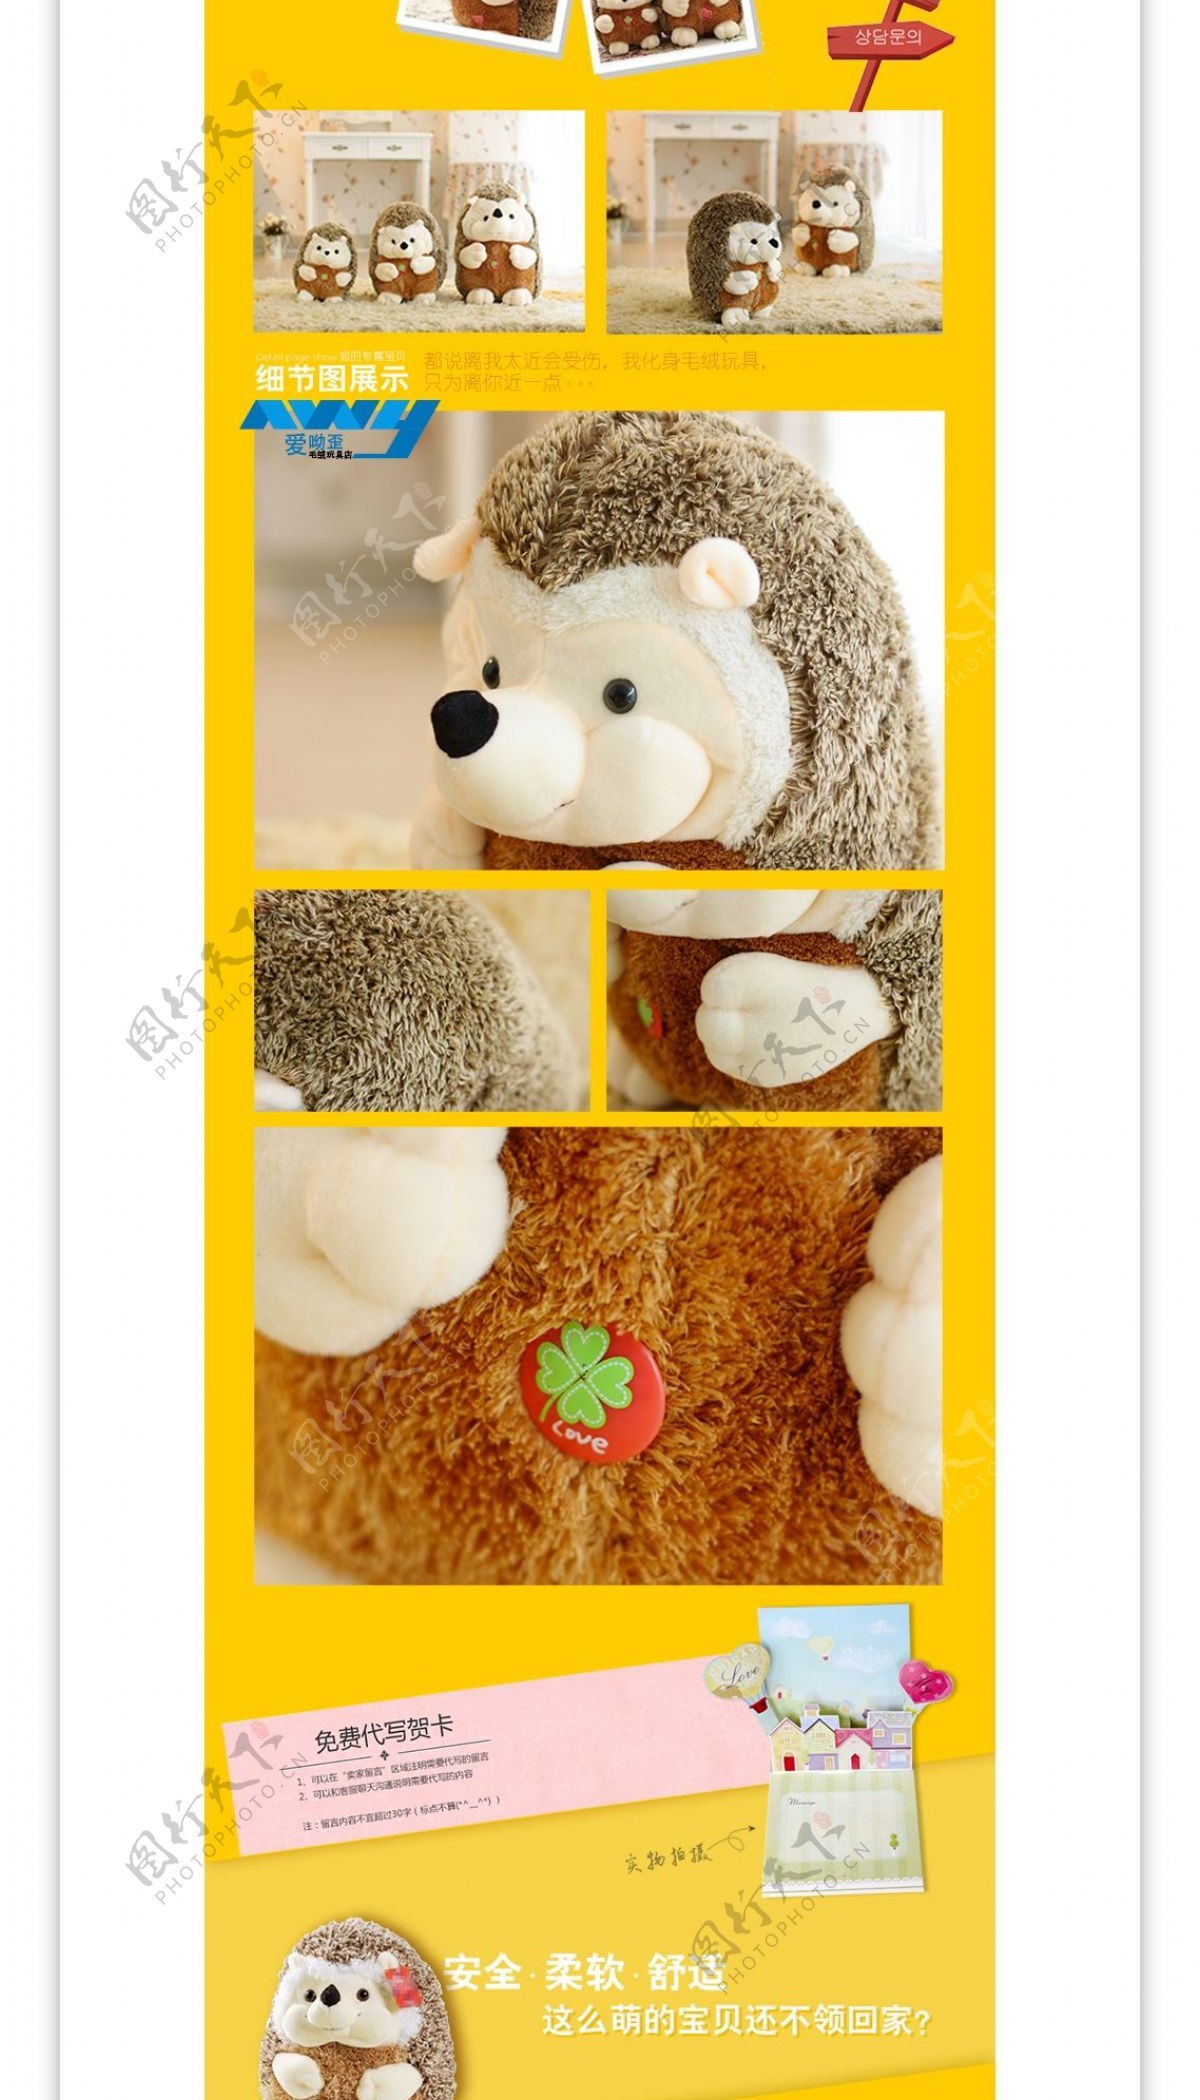 可爱刺猬毛绒玩具详情模板